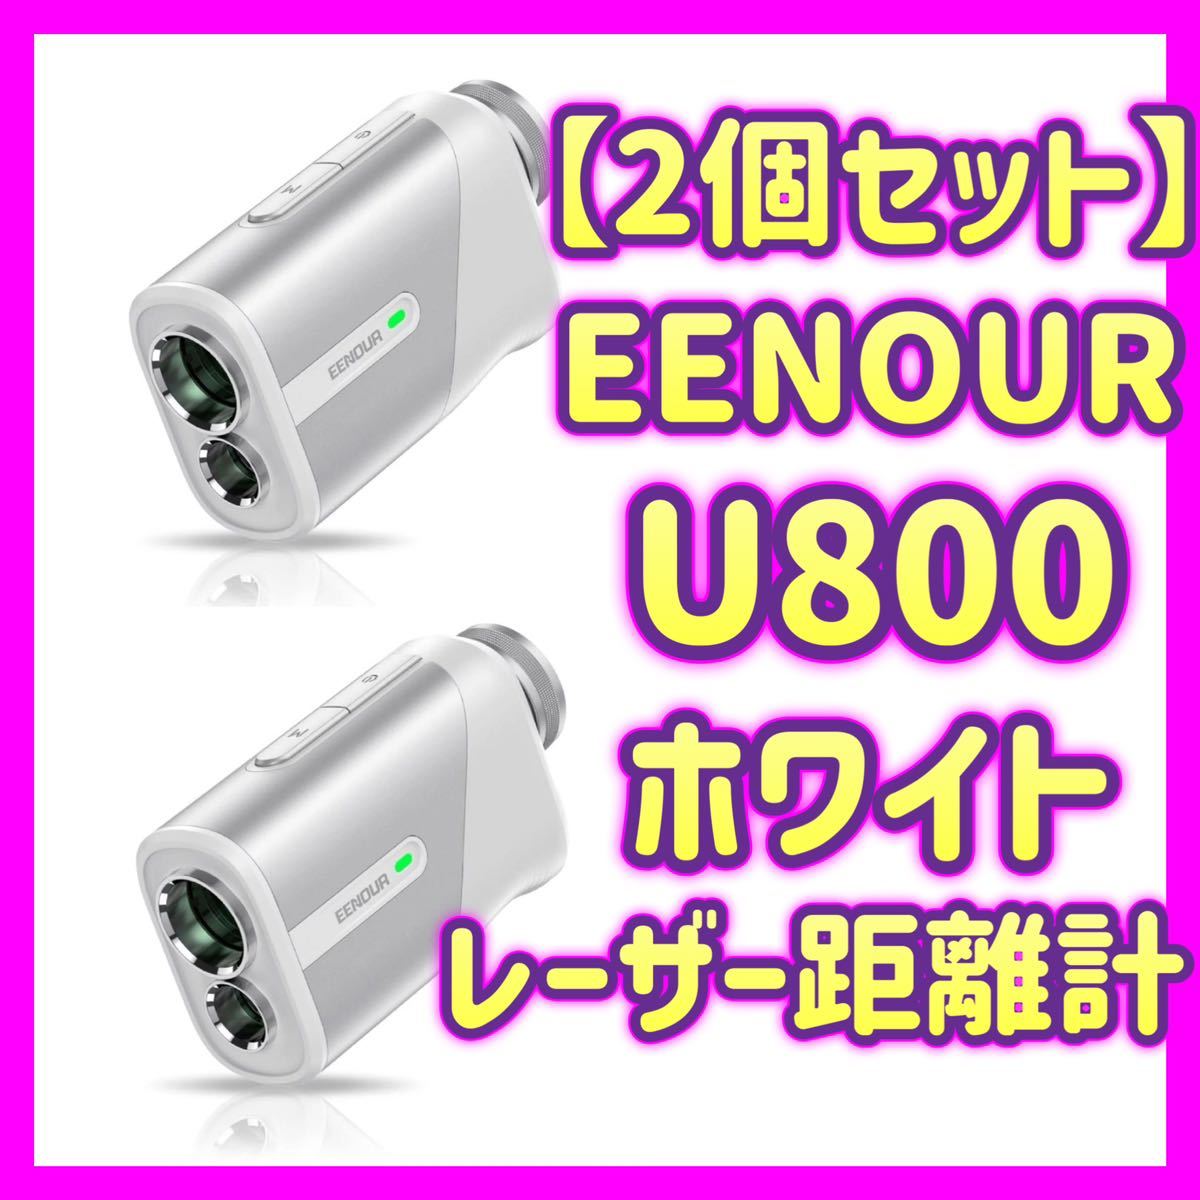 送料込】 【2個セット販売】EENOUR U800 ゴルフ レーザー距離計